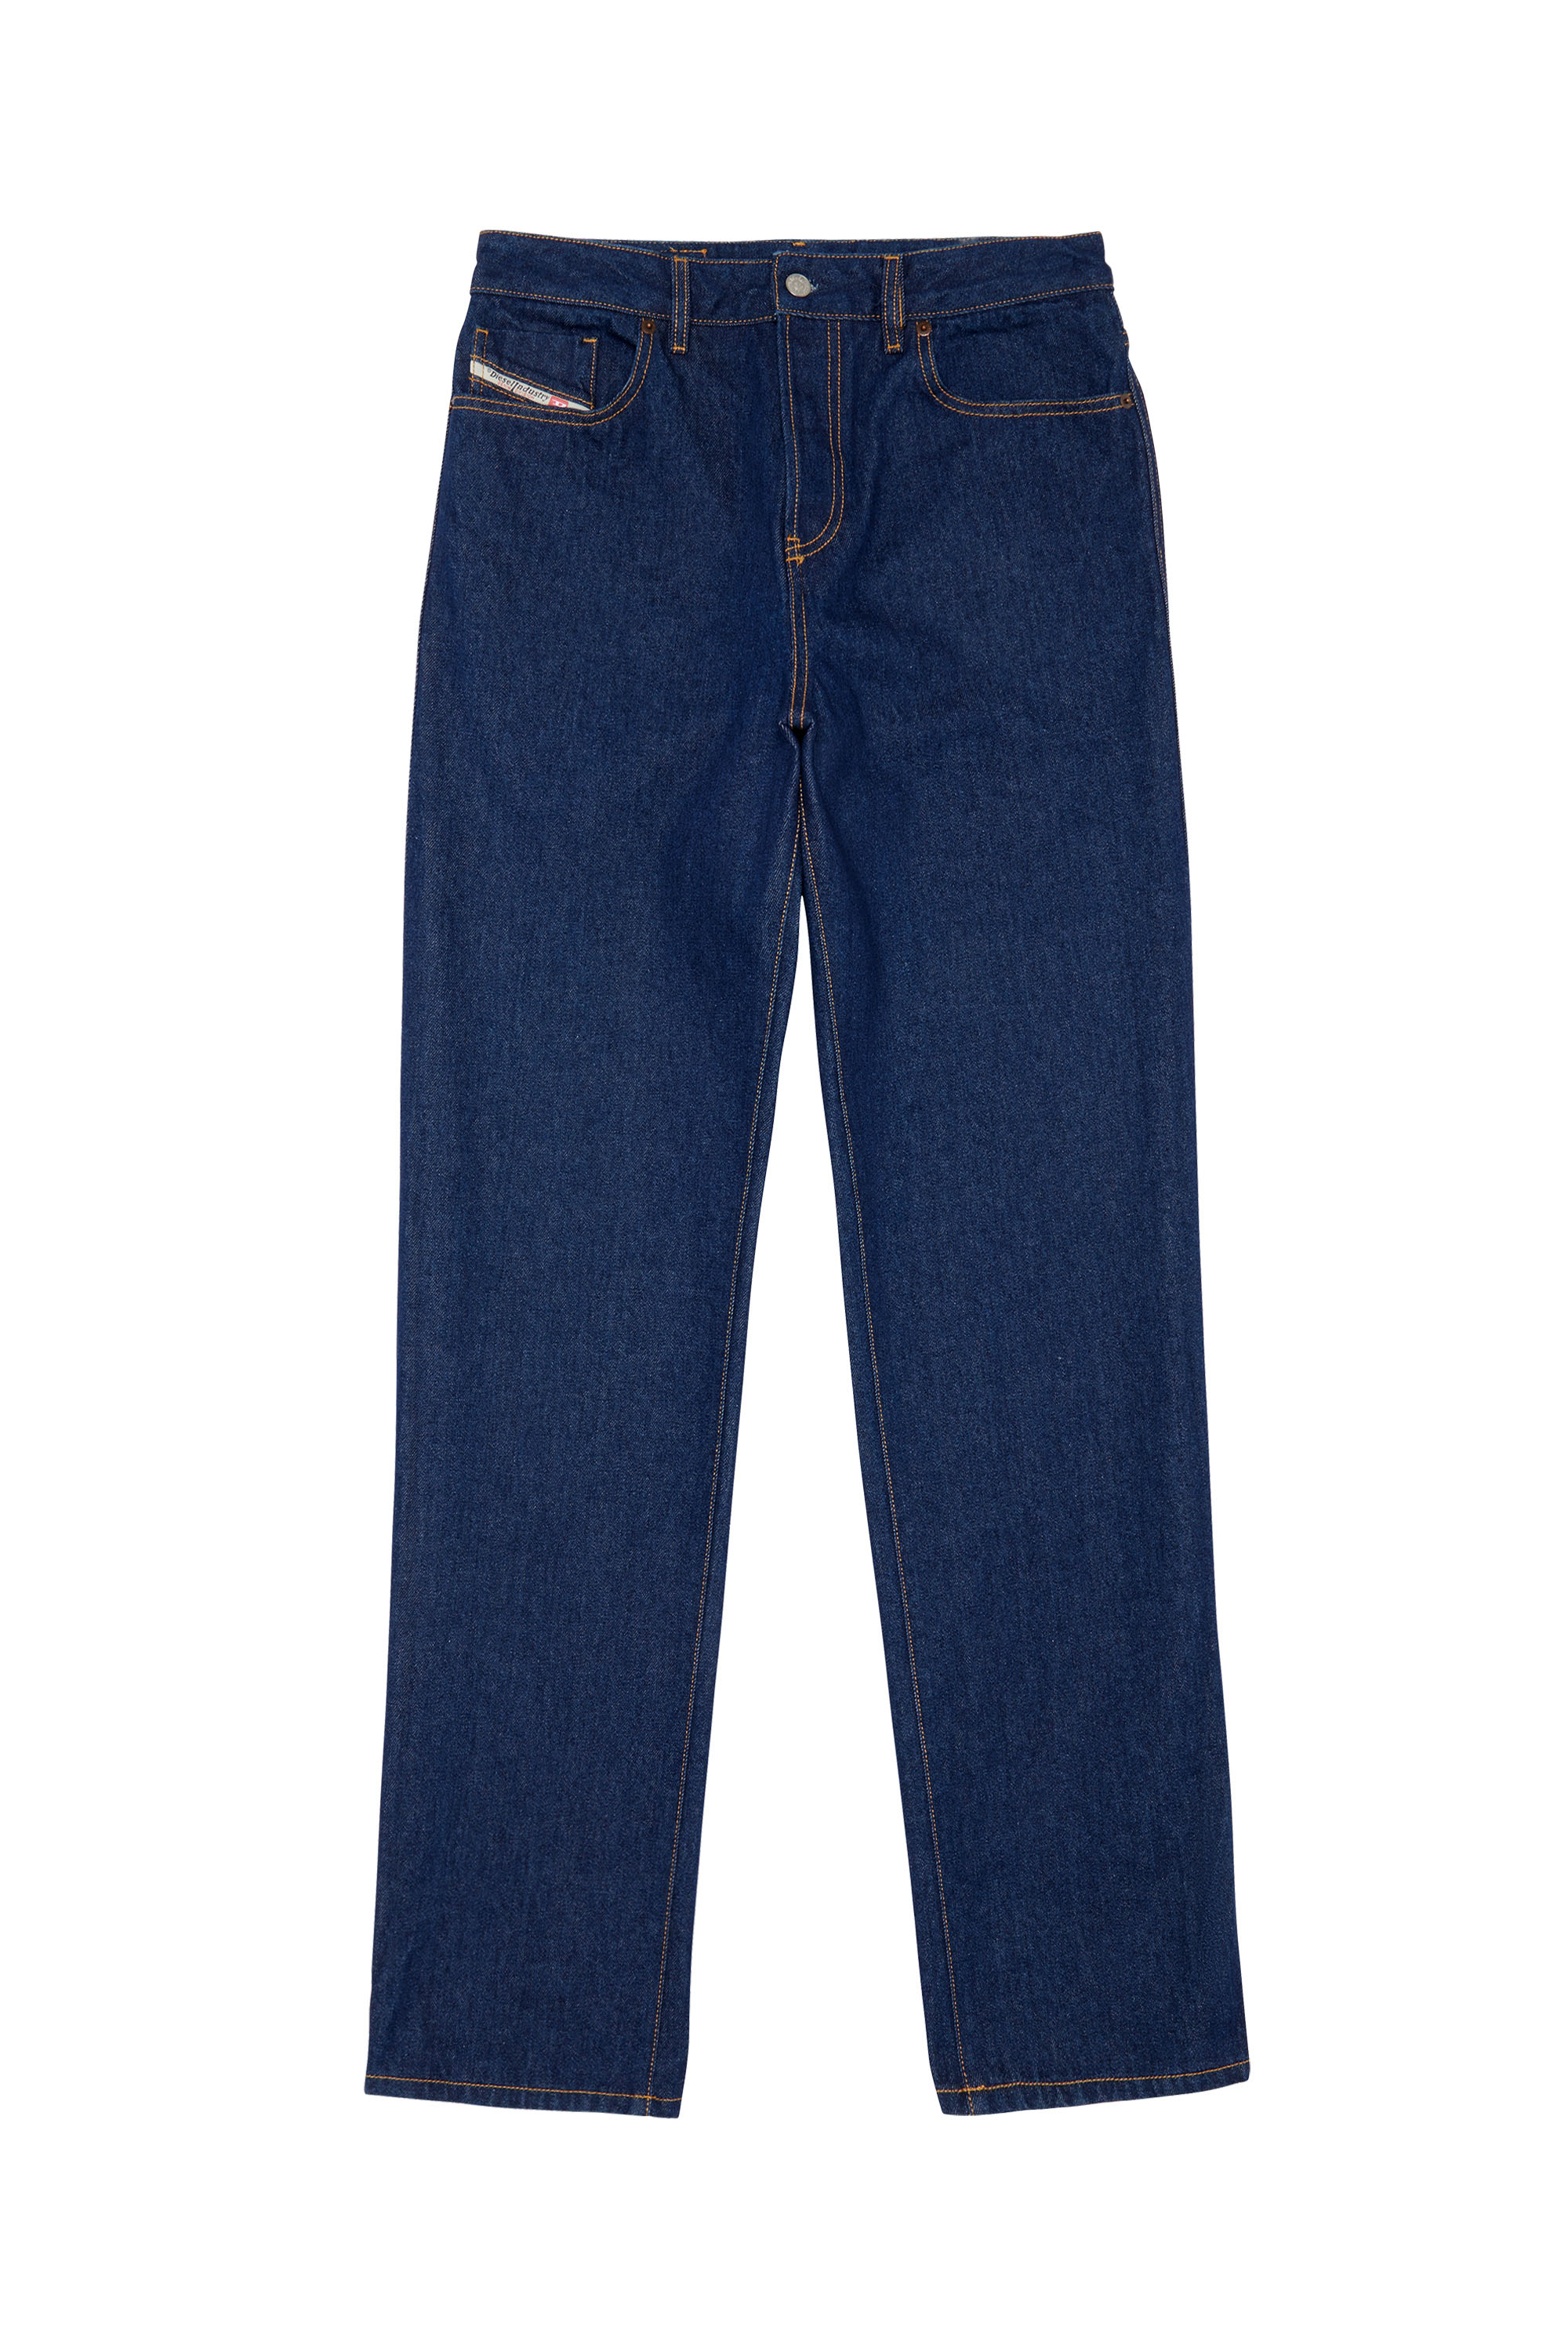 1955 007A5 Straight Jeans, Bleu Foncé - Jeans